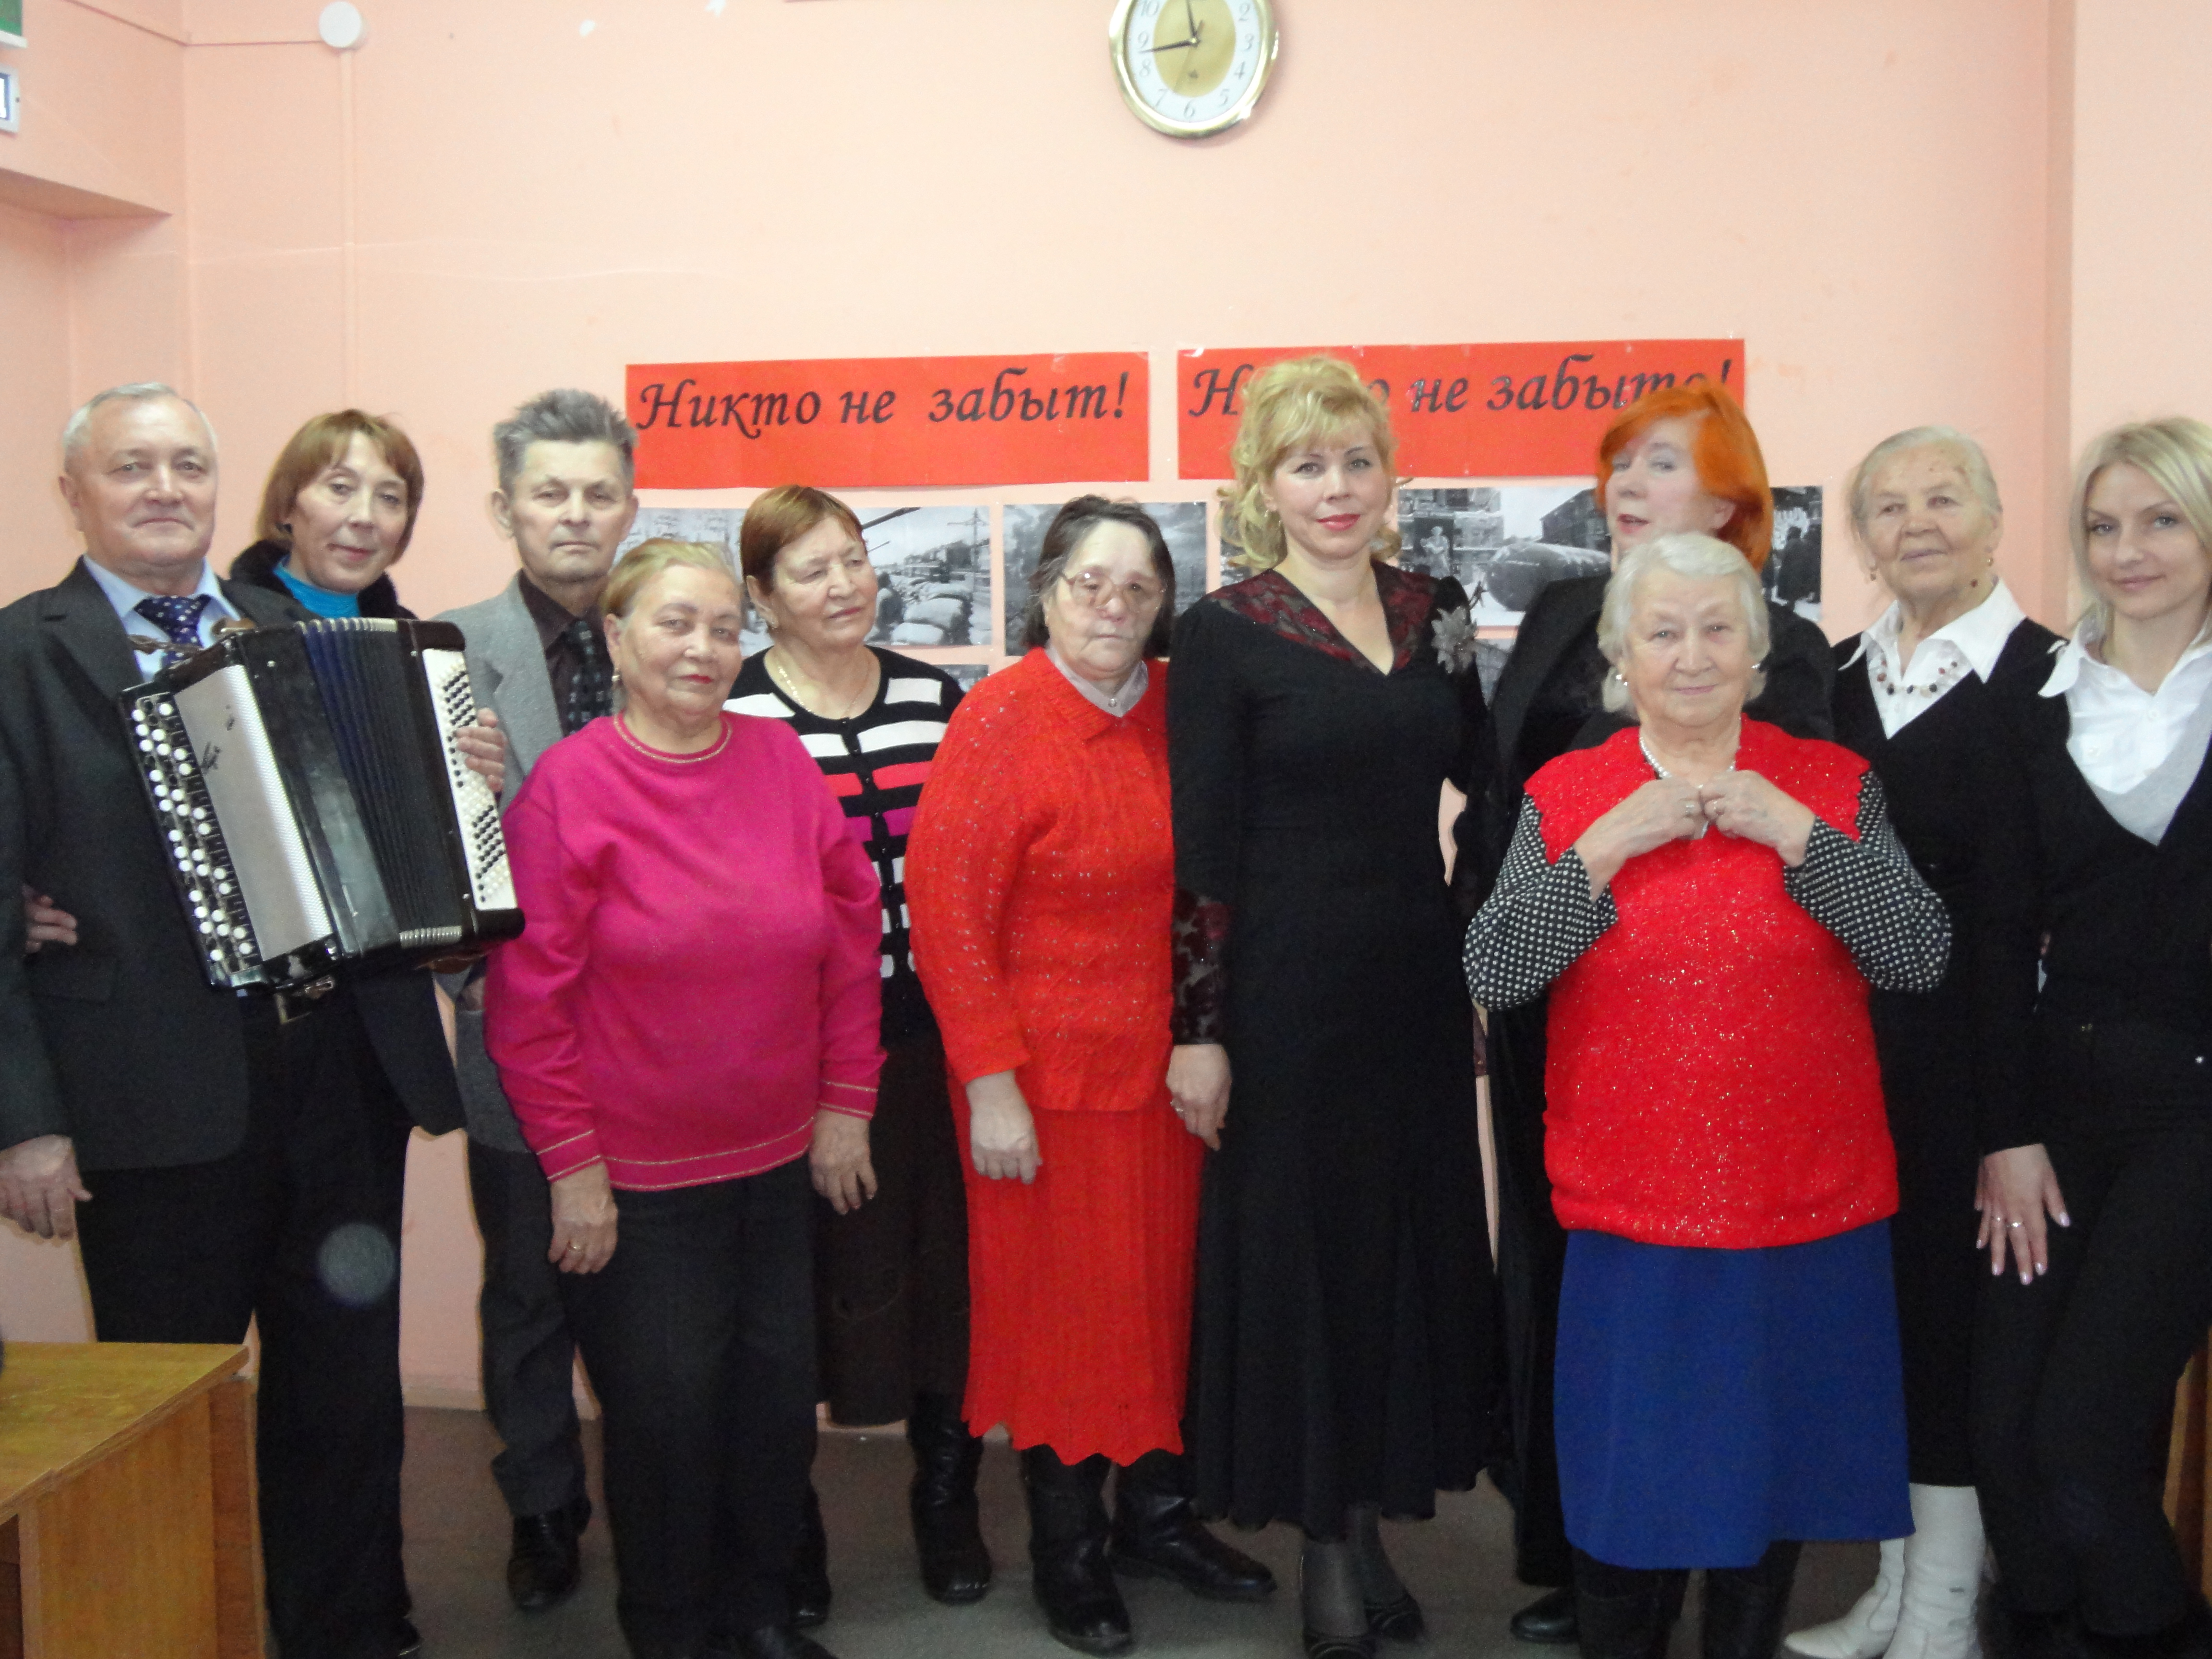 10:11 В Центре социального обслуживания населения Московского района состоялось мероприятие «Сталинград – пылающая память войны»